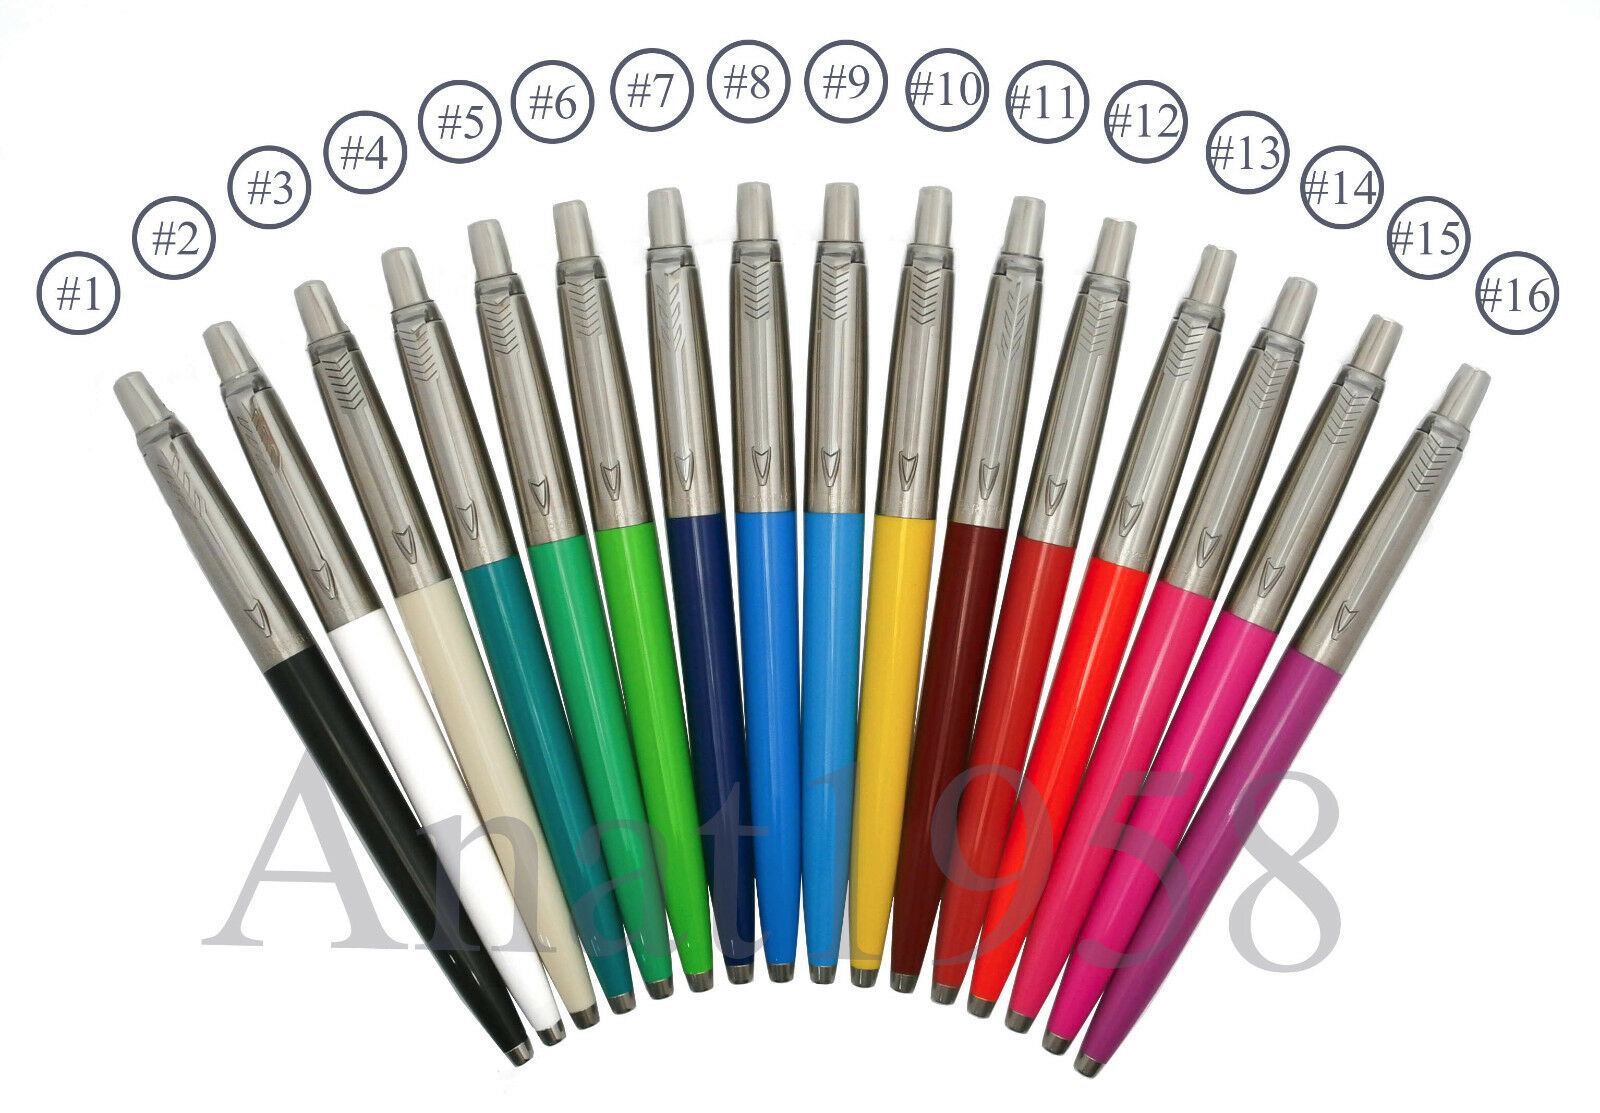 Parker Jotter Ballpoint Pens 16 Available Colors (bulk Options In Description)